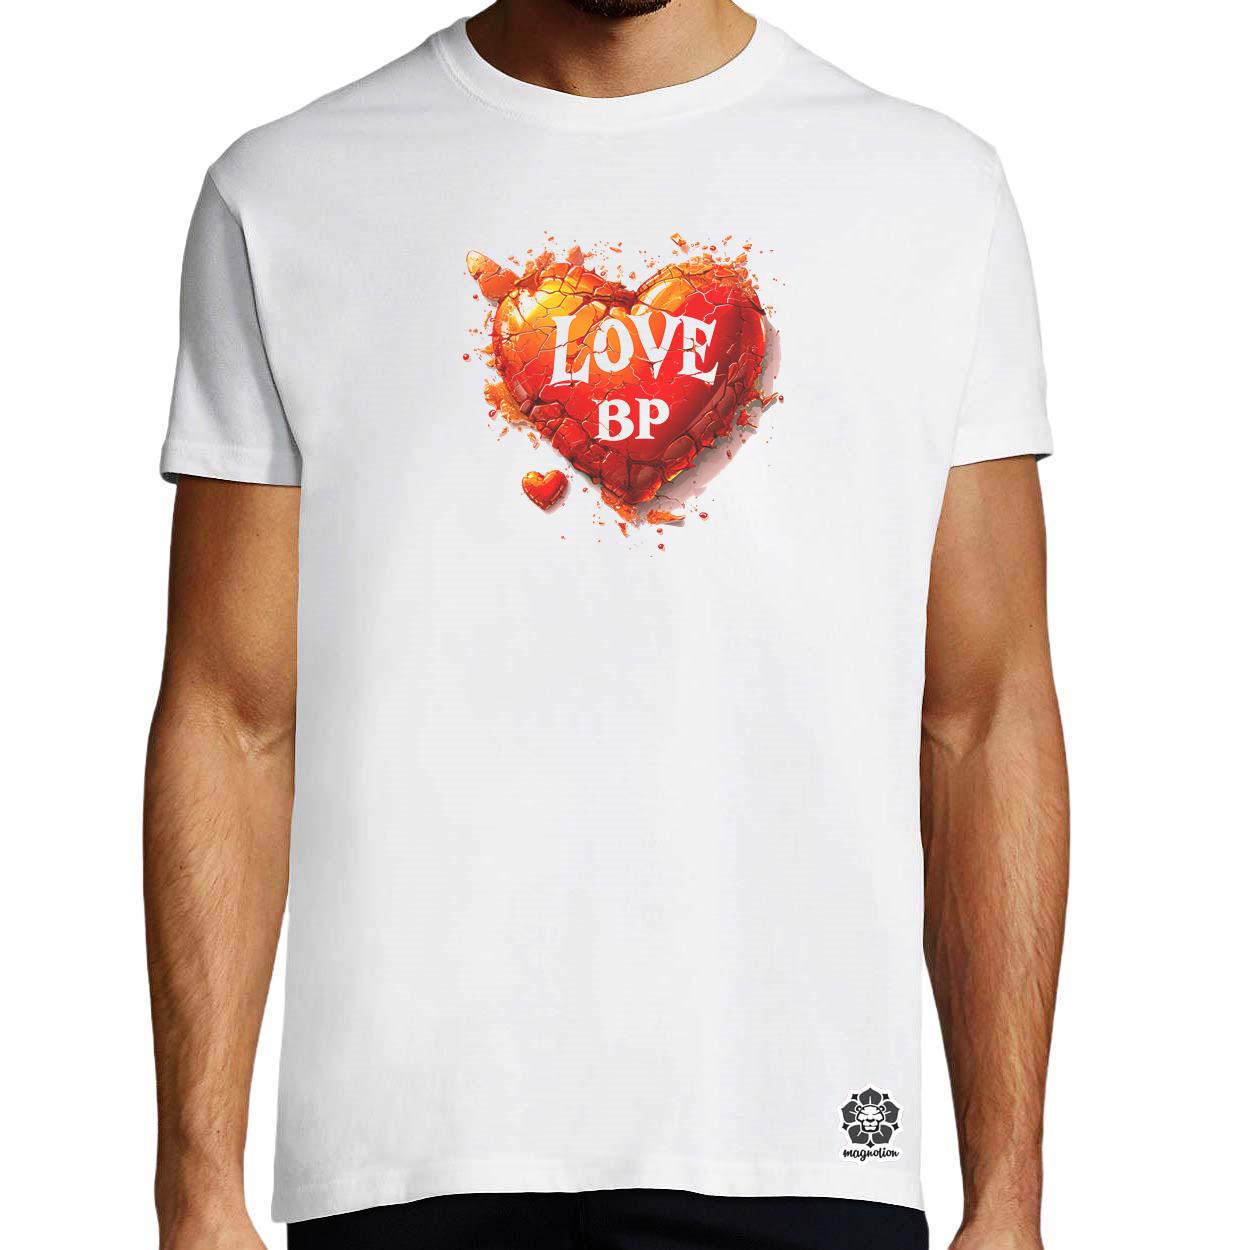 Love BP v22